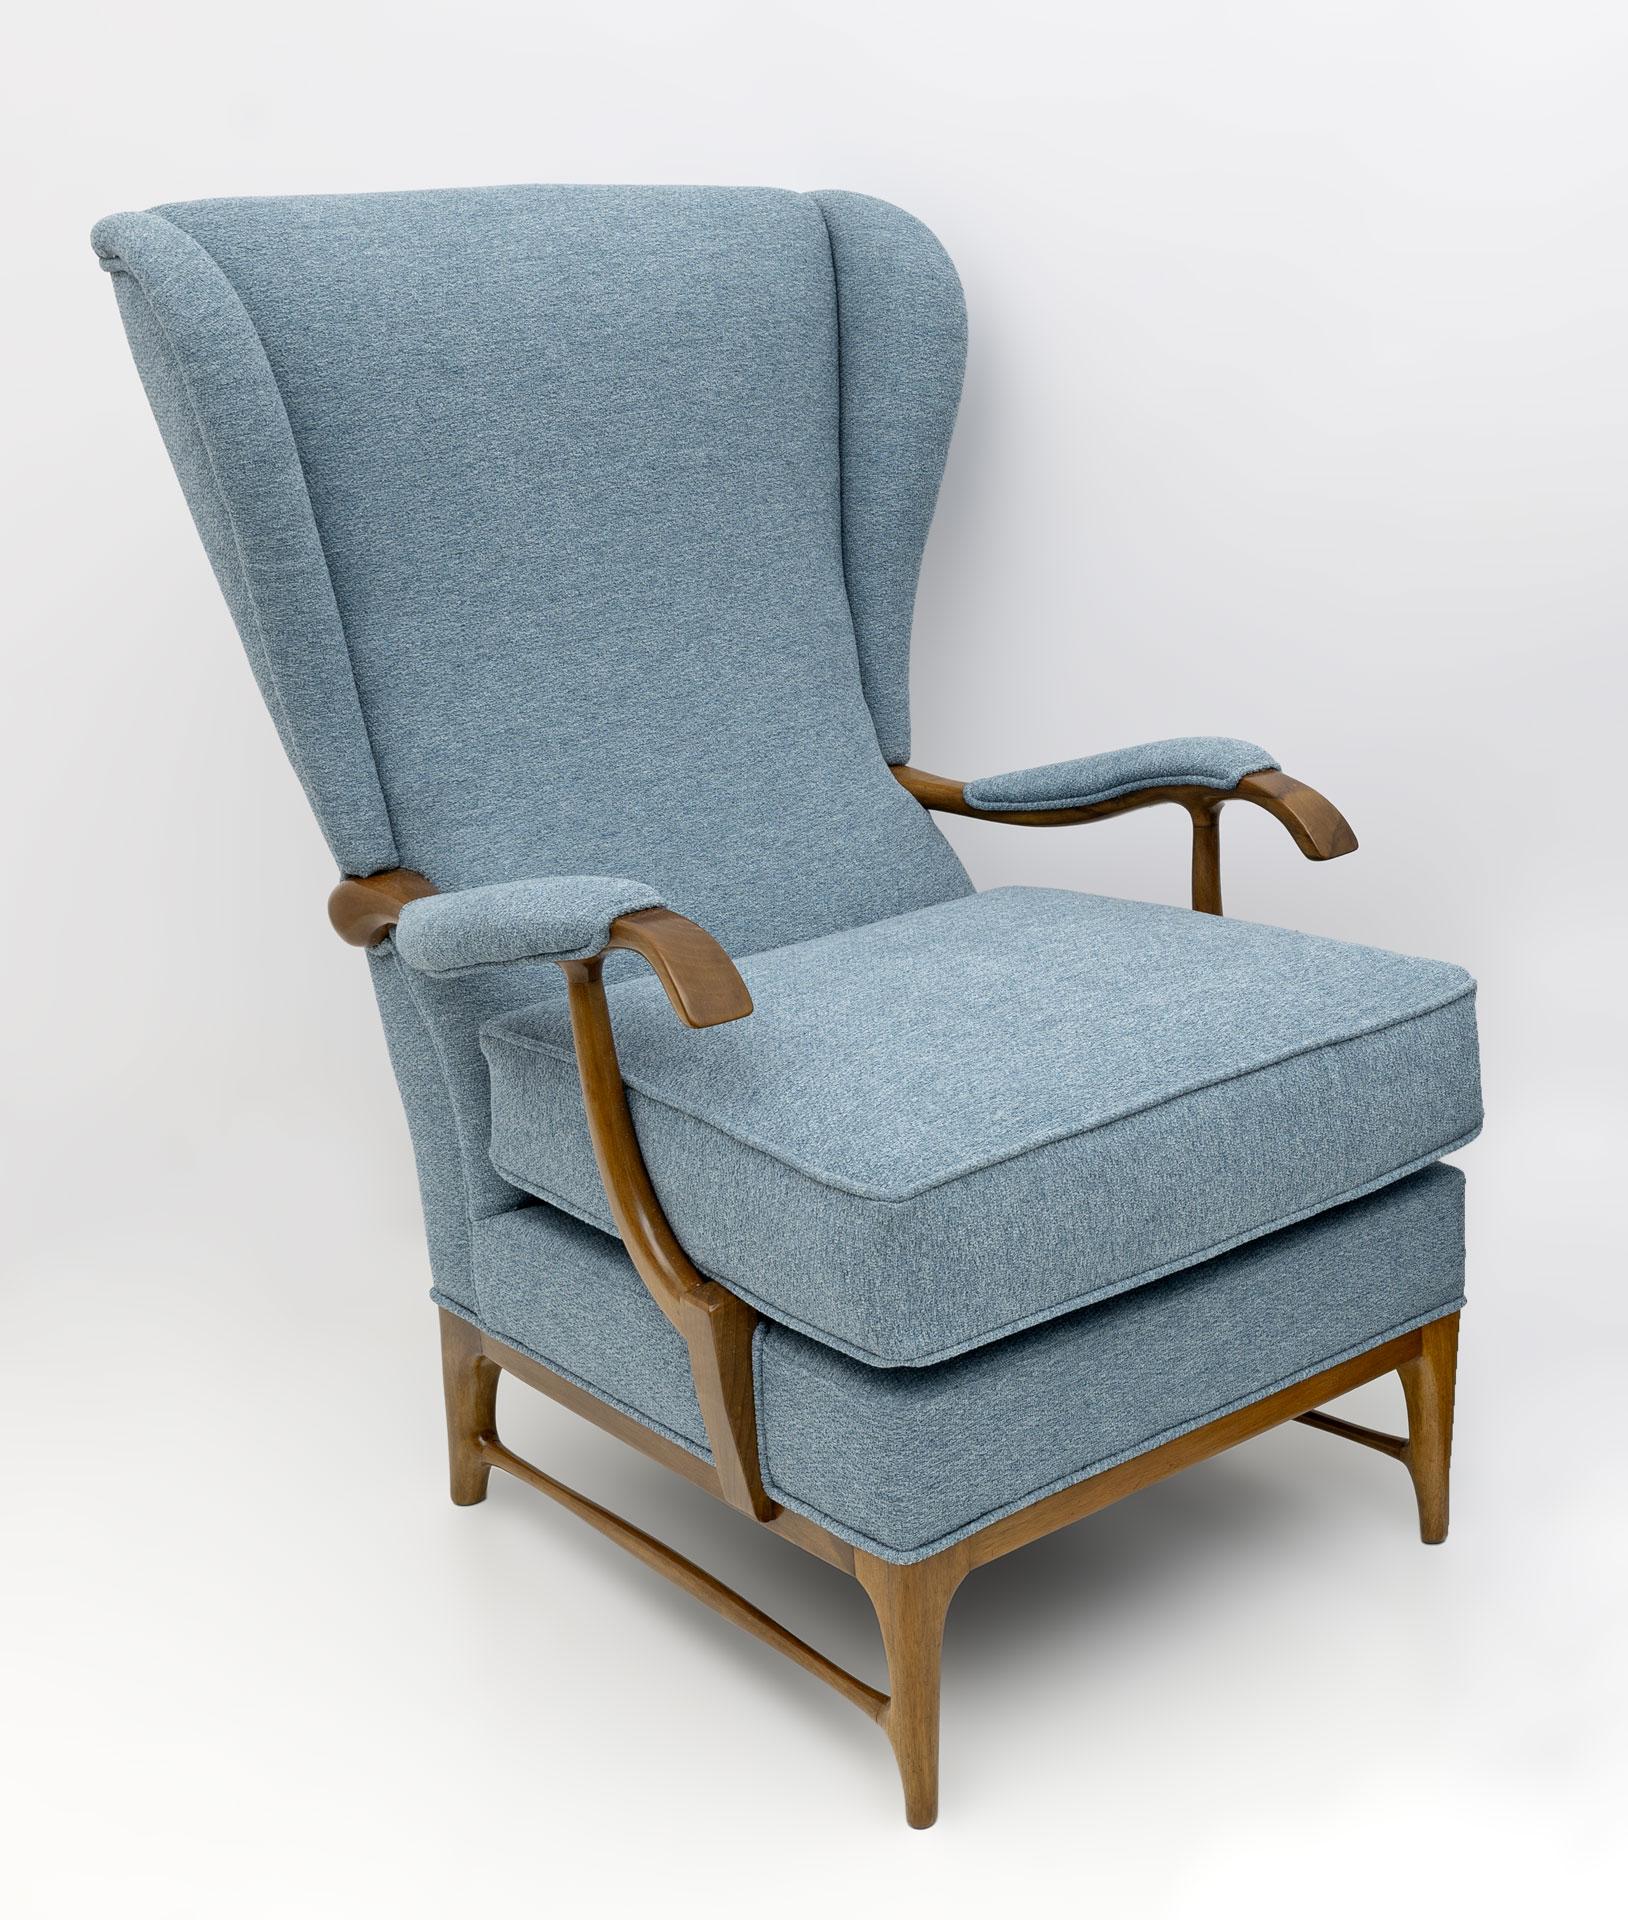 Paire de fauteuils Wingback conçus par Paolo Buffa et produits par Framar dans les années 1950. Les fauteuils ont été restaurés et tapissés de tissu bouclé couleur papier de sucre. Paolo Buffa était un designer et un architecte italien. Il est l'un